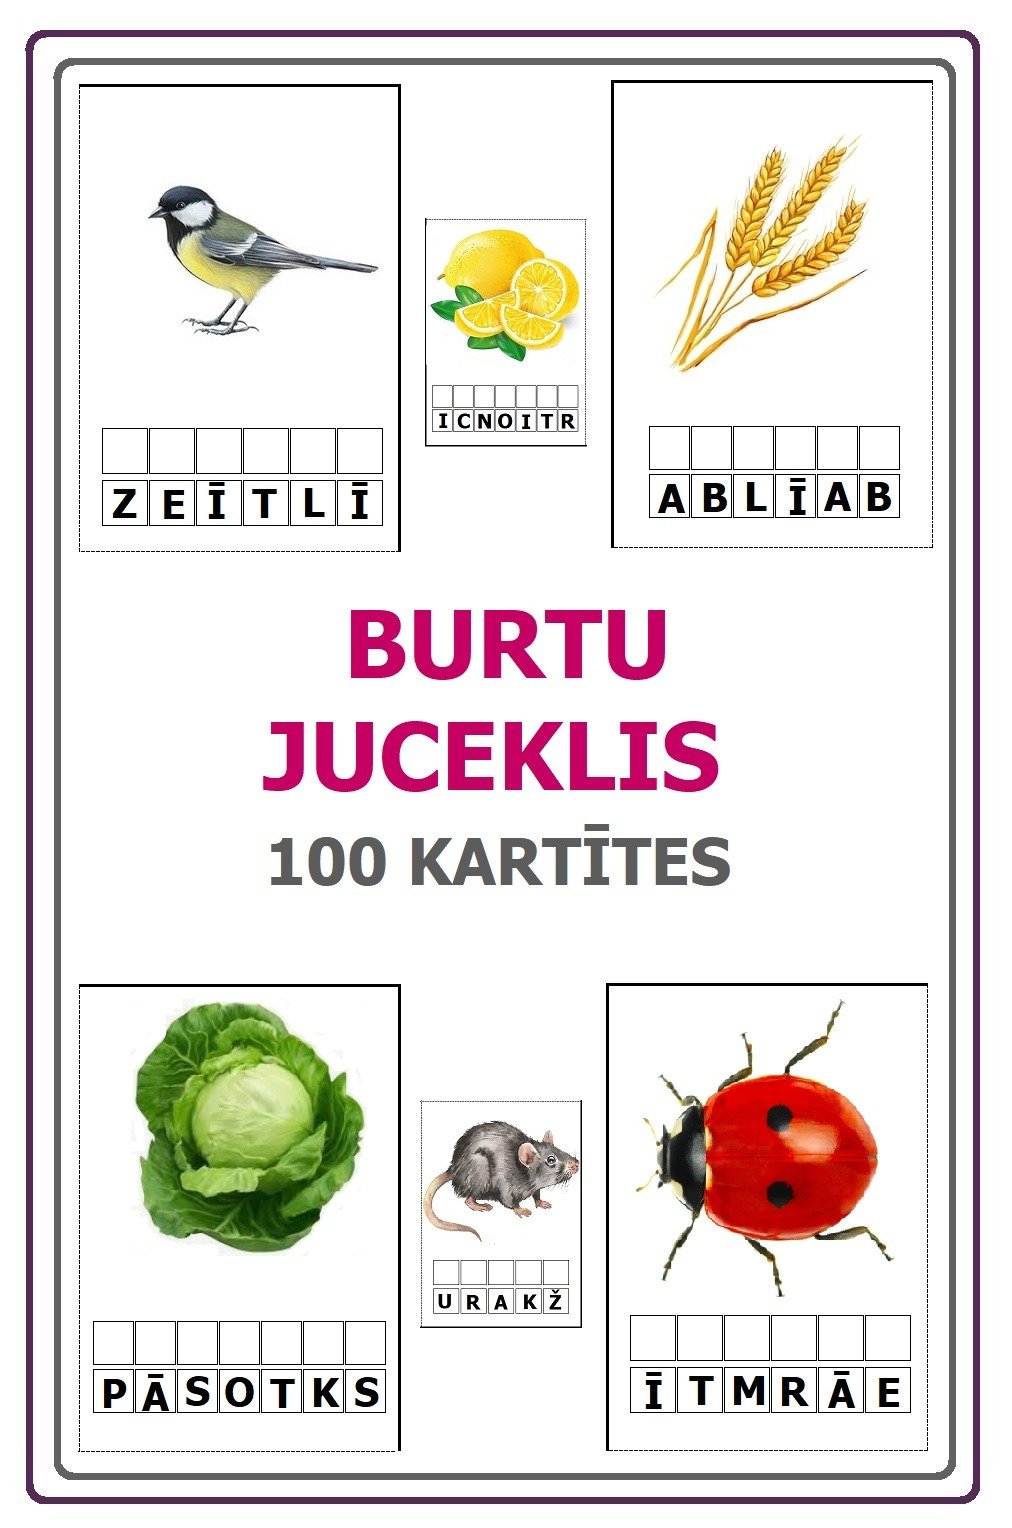 BURTU JUCEKLIS